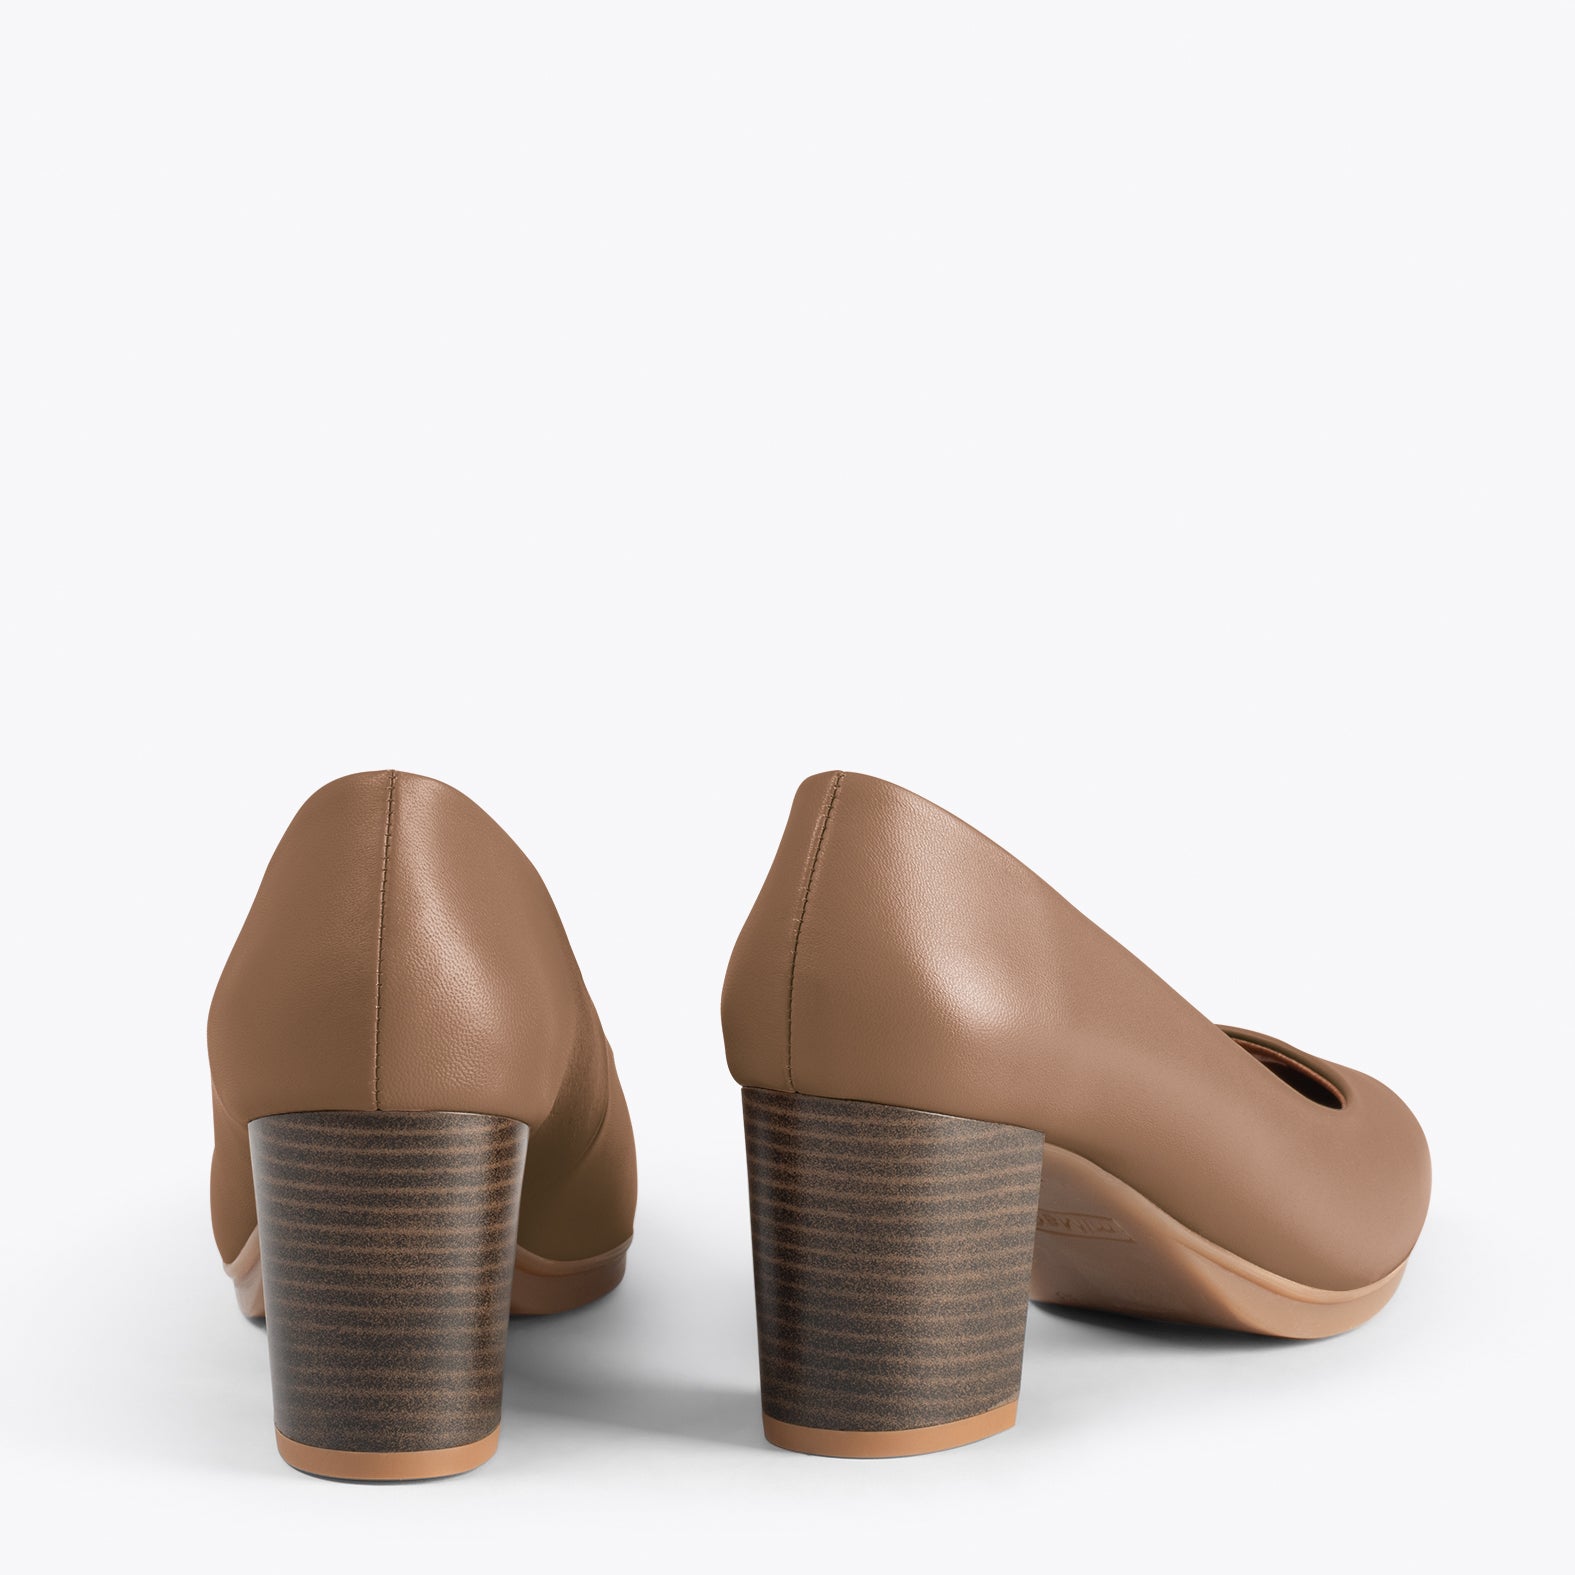 URBAN S SOIRÉE – Chaussures à talon moyen en cuir nappa MARRON